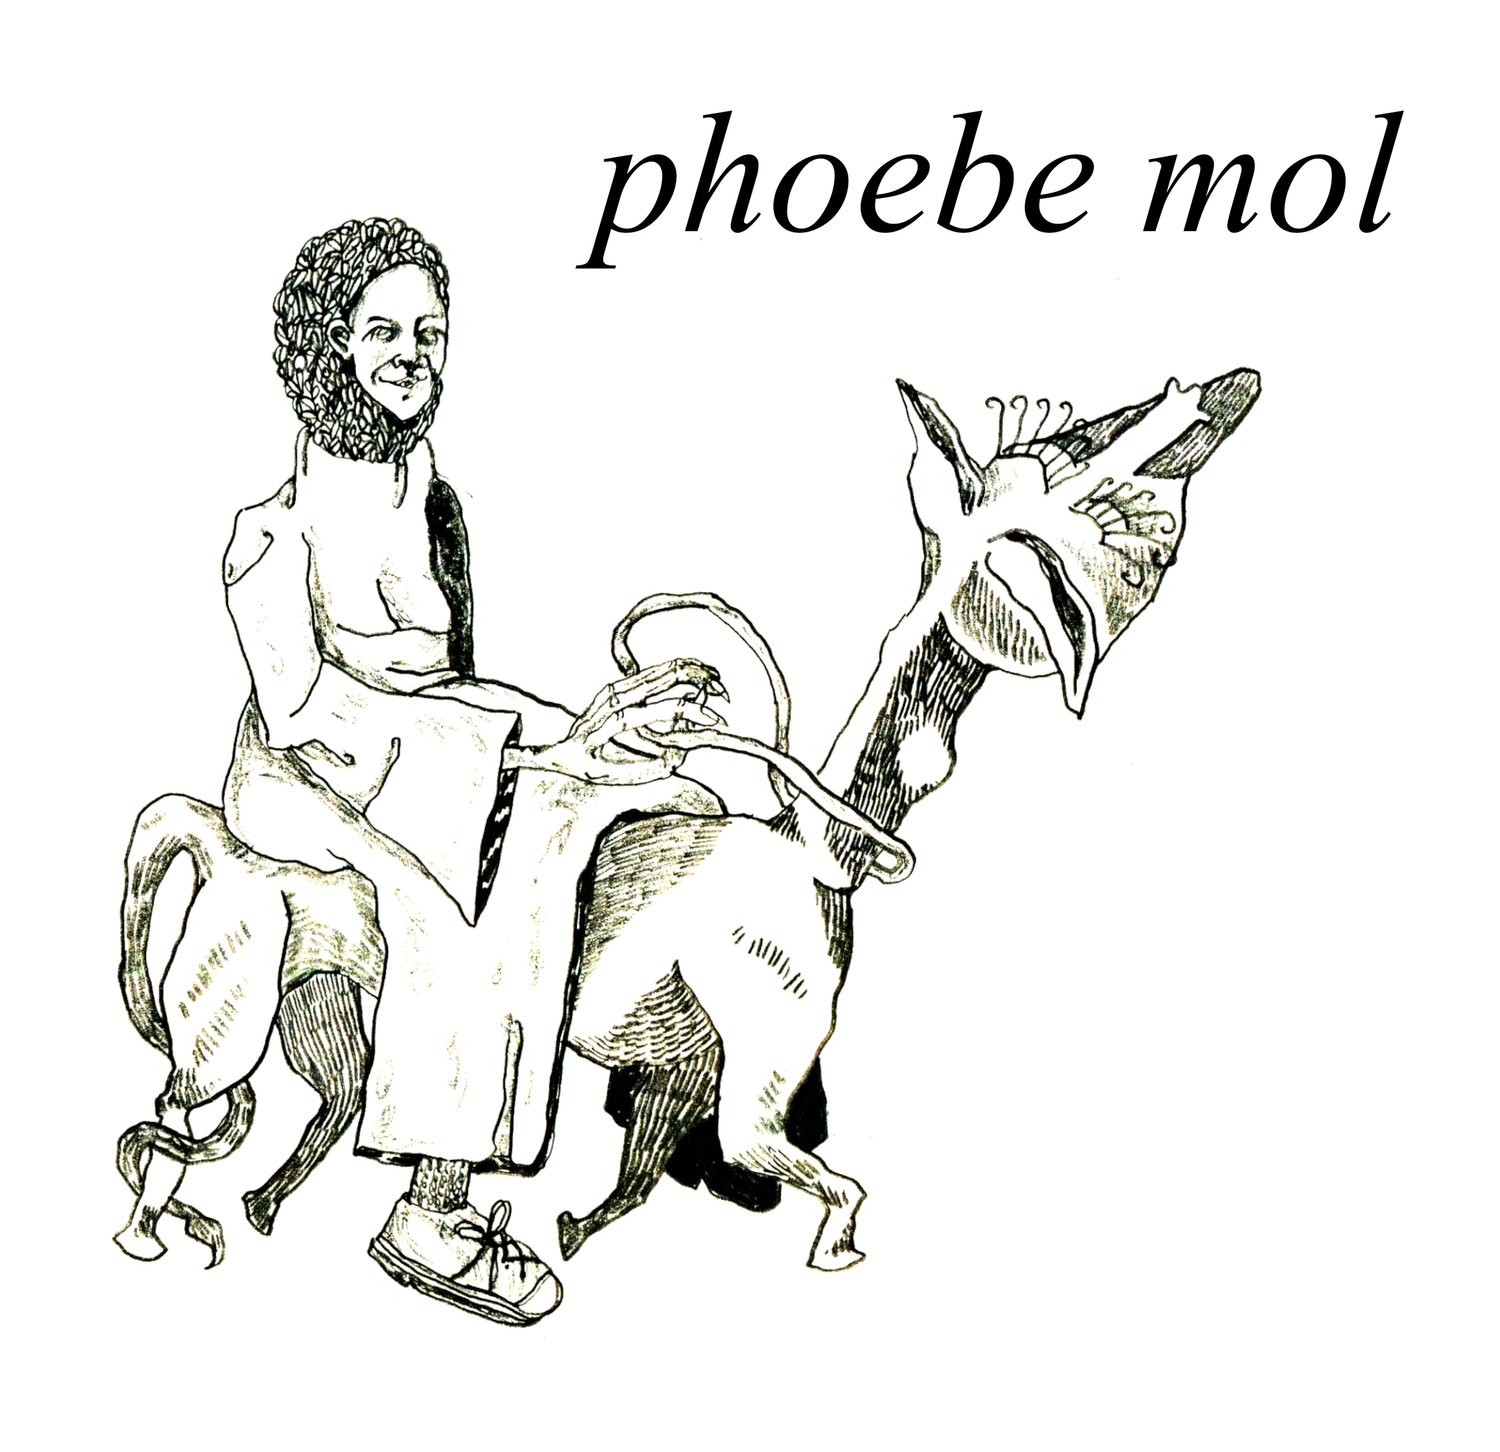 phoebe mol